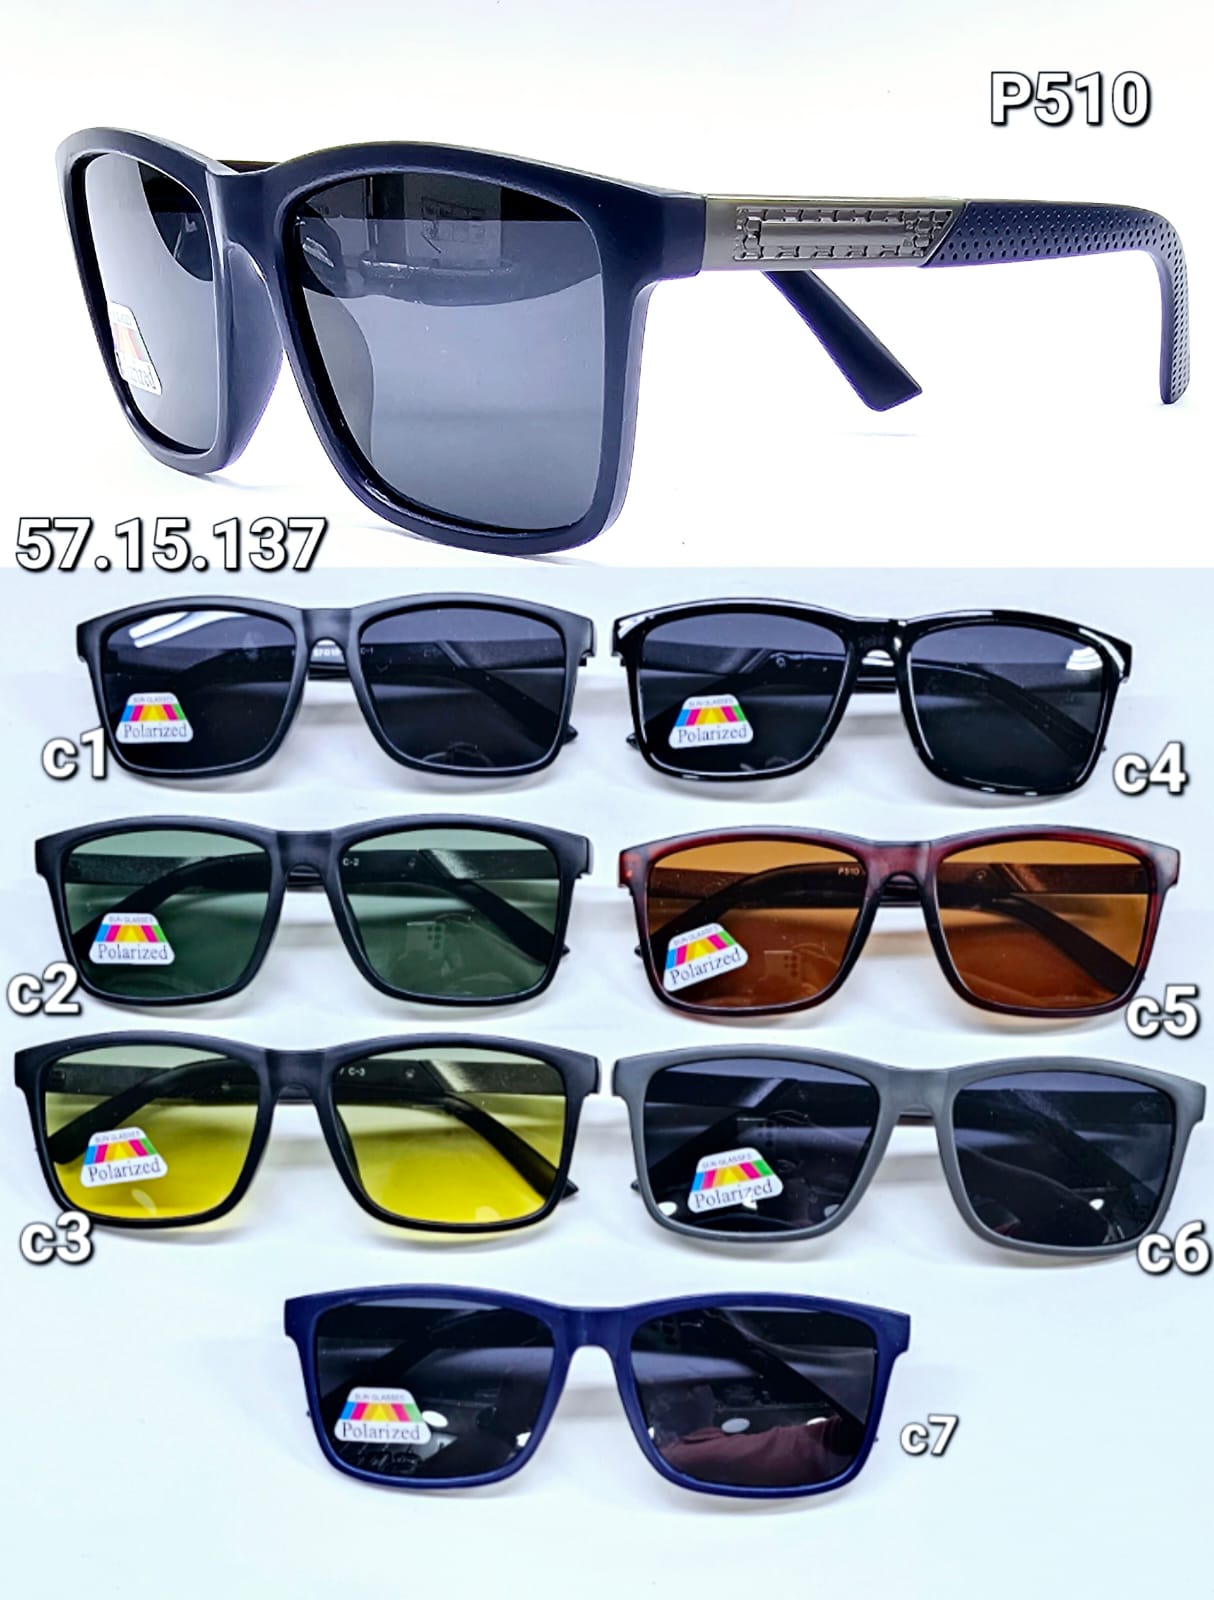 N6 - Óculos de SOL - POLARIZADO - MASC. R$ 38,00 thumbnail